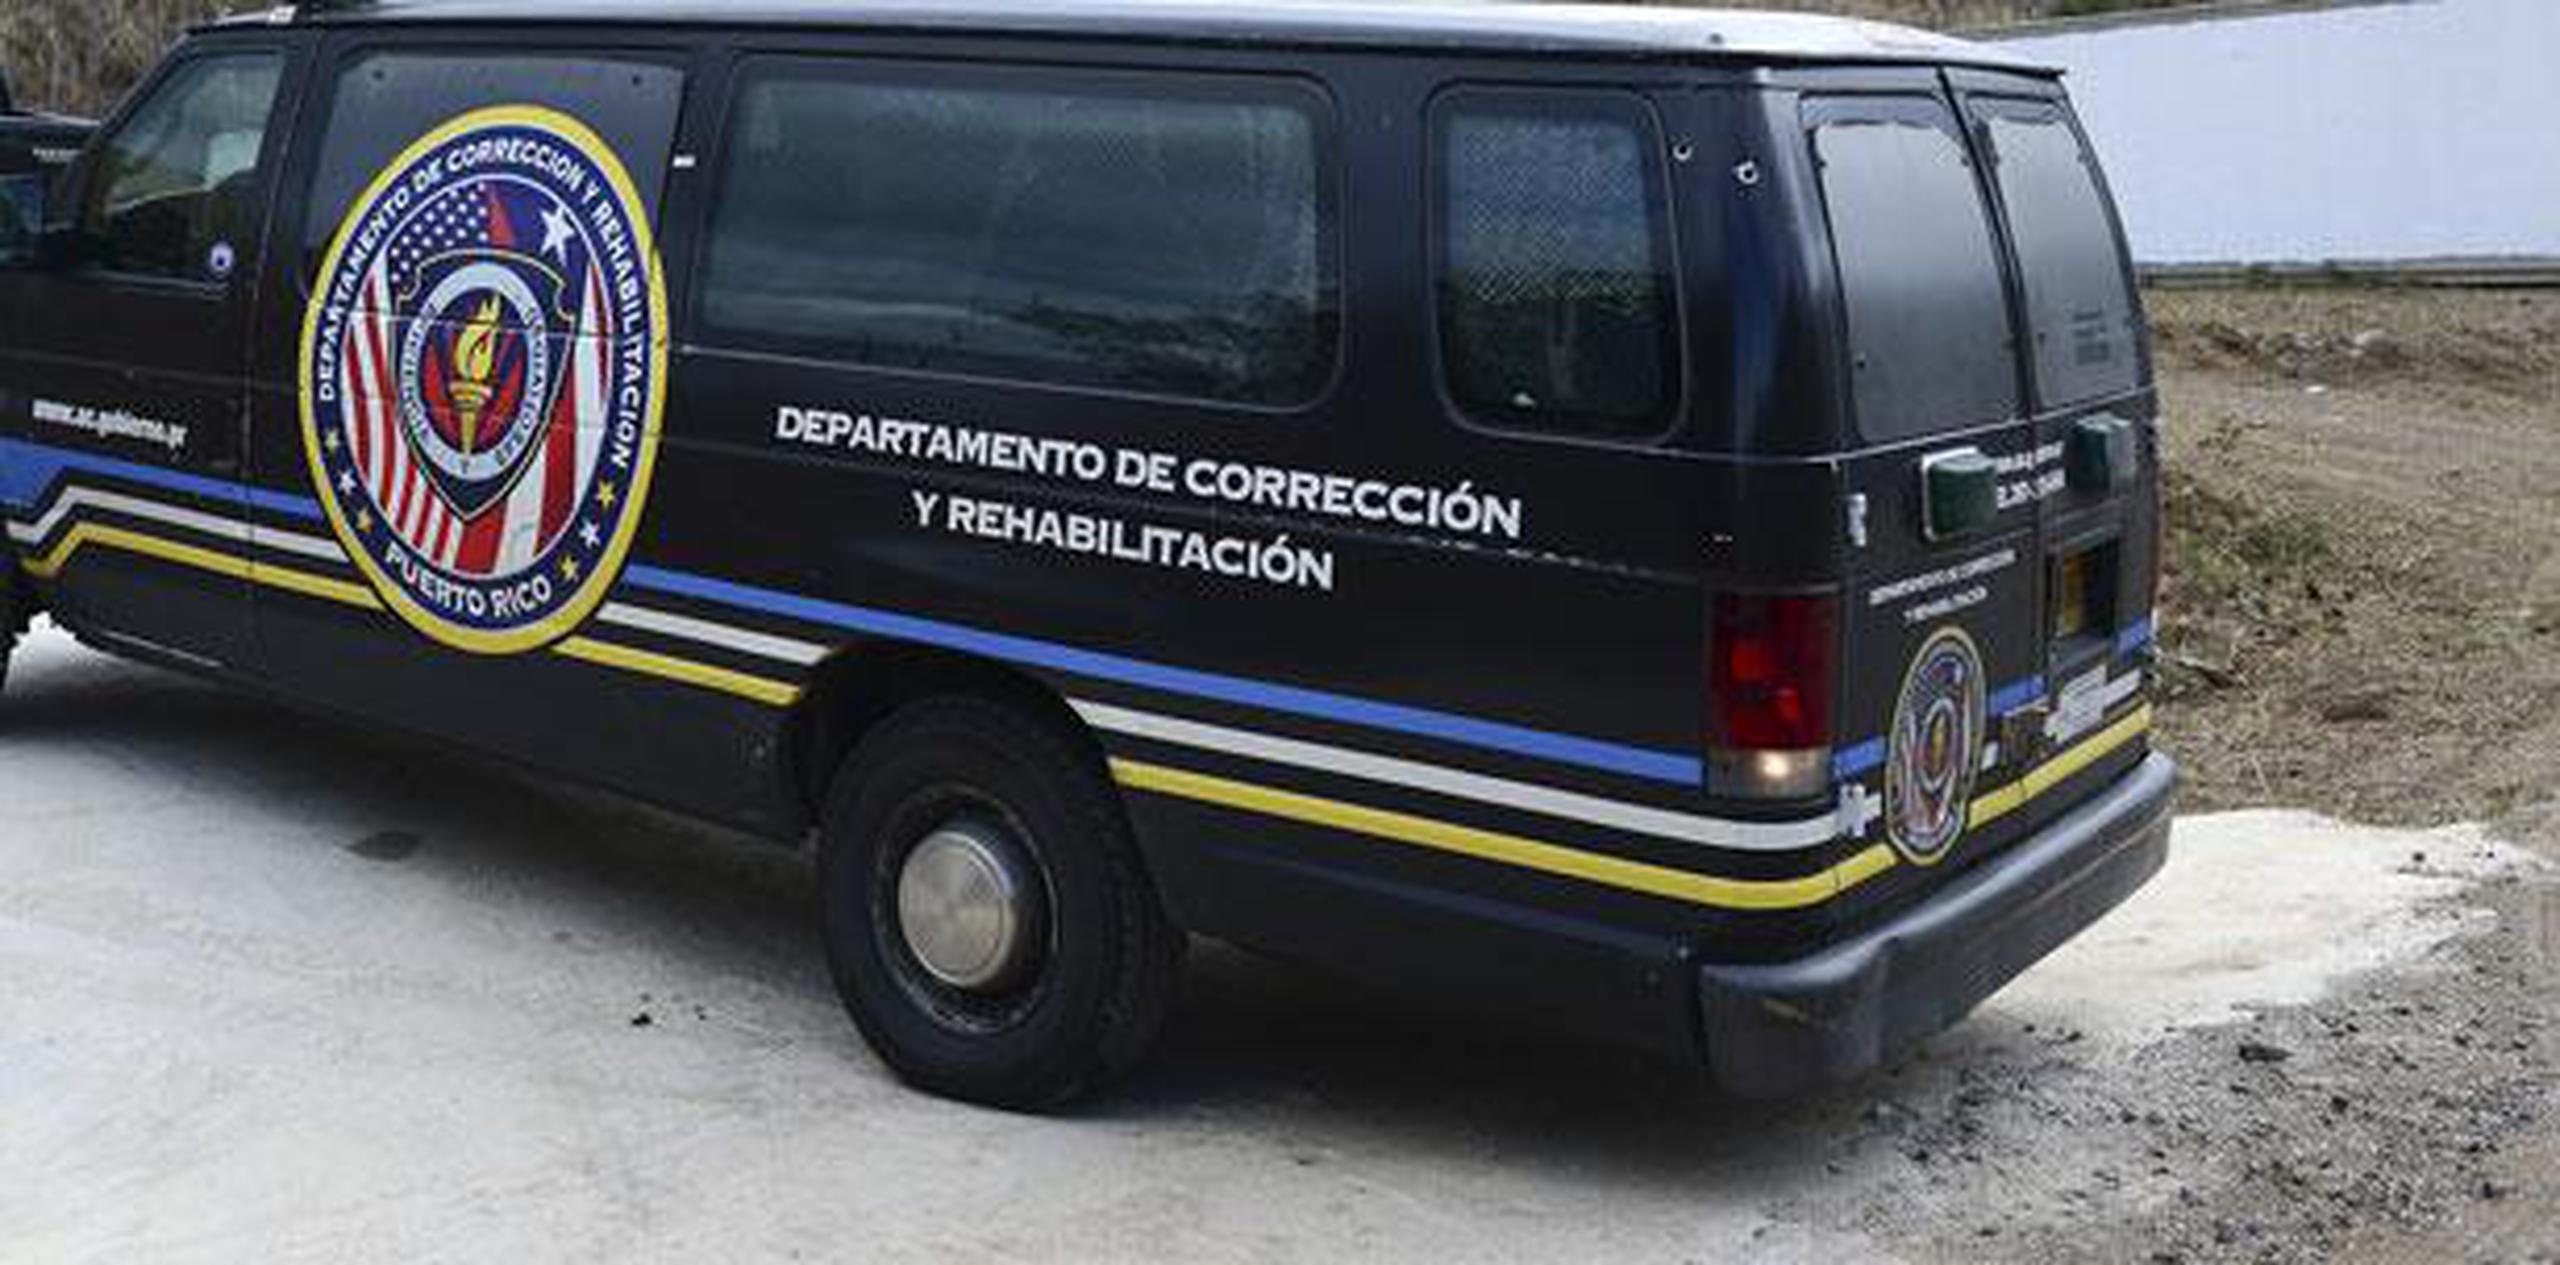 El cuerpo fue encontrado en horas de la noche del 23 de octubre de 2015 en la parte posterior de una guagua de Corrección luego de que el vehículo llegara al complejo Las Cucharas, en Ponce. (Archivo)